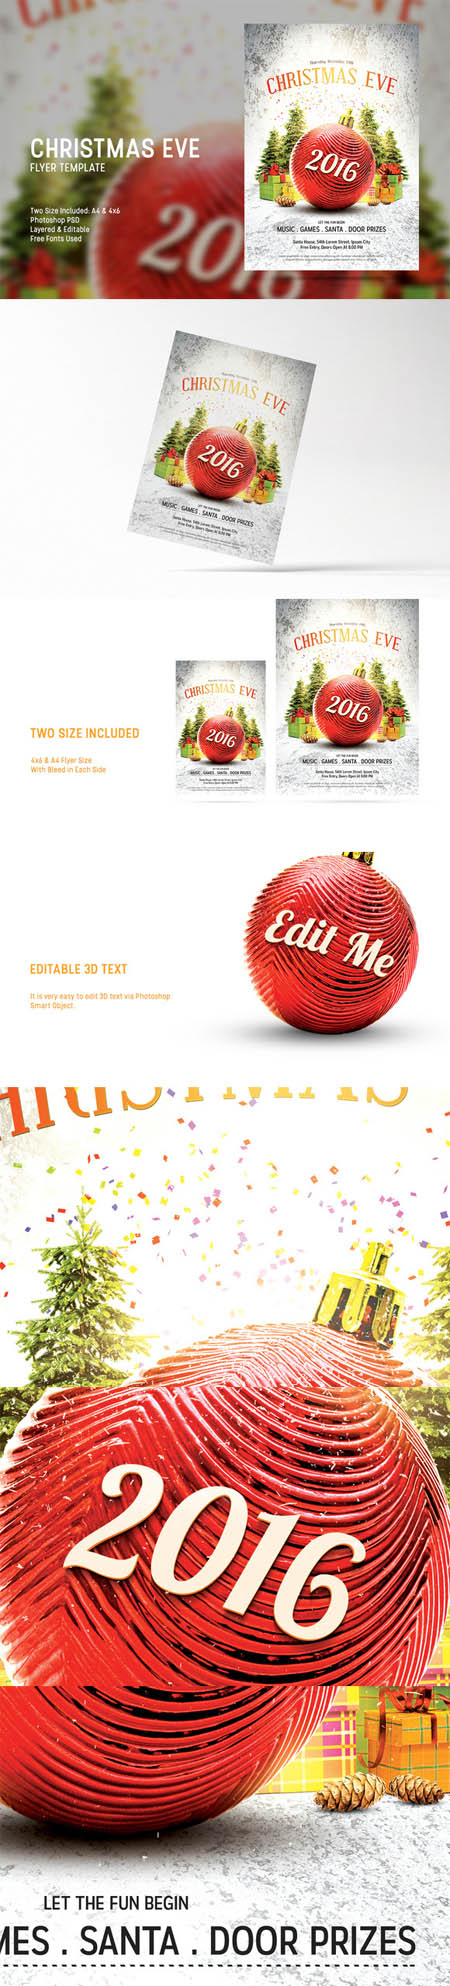 CM - Christmas Eve Flyer Template 437515